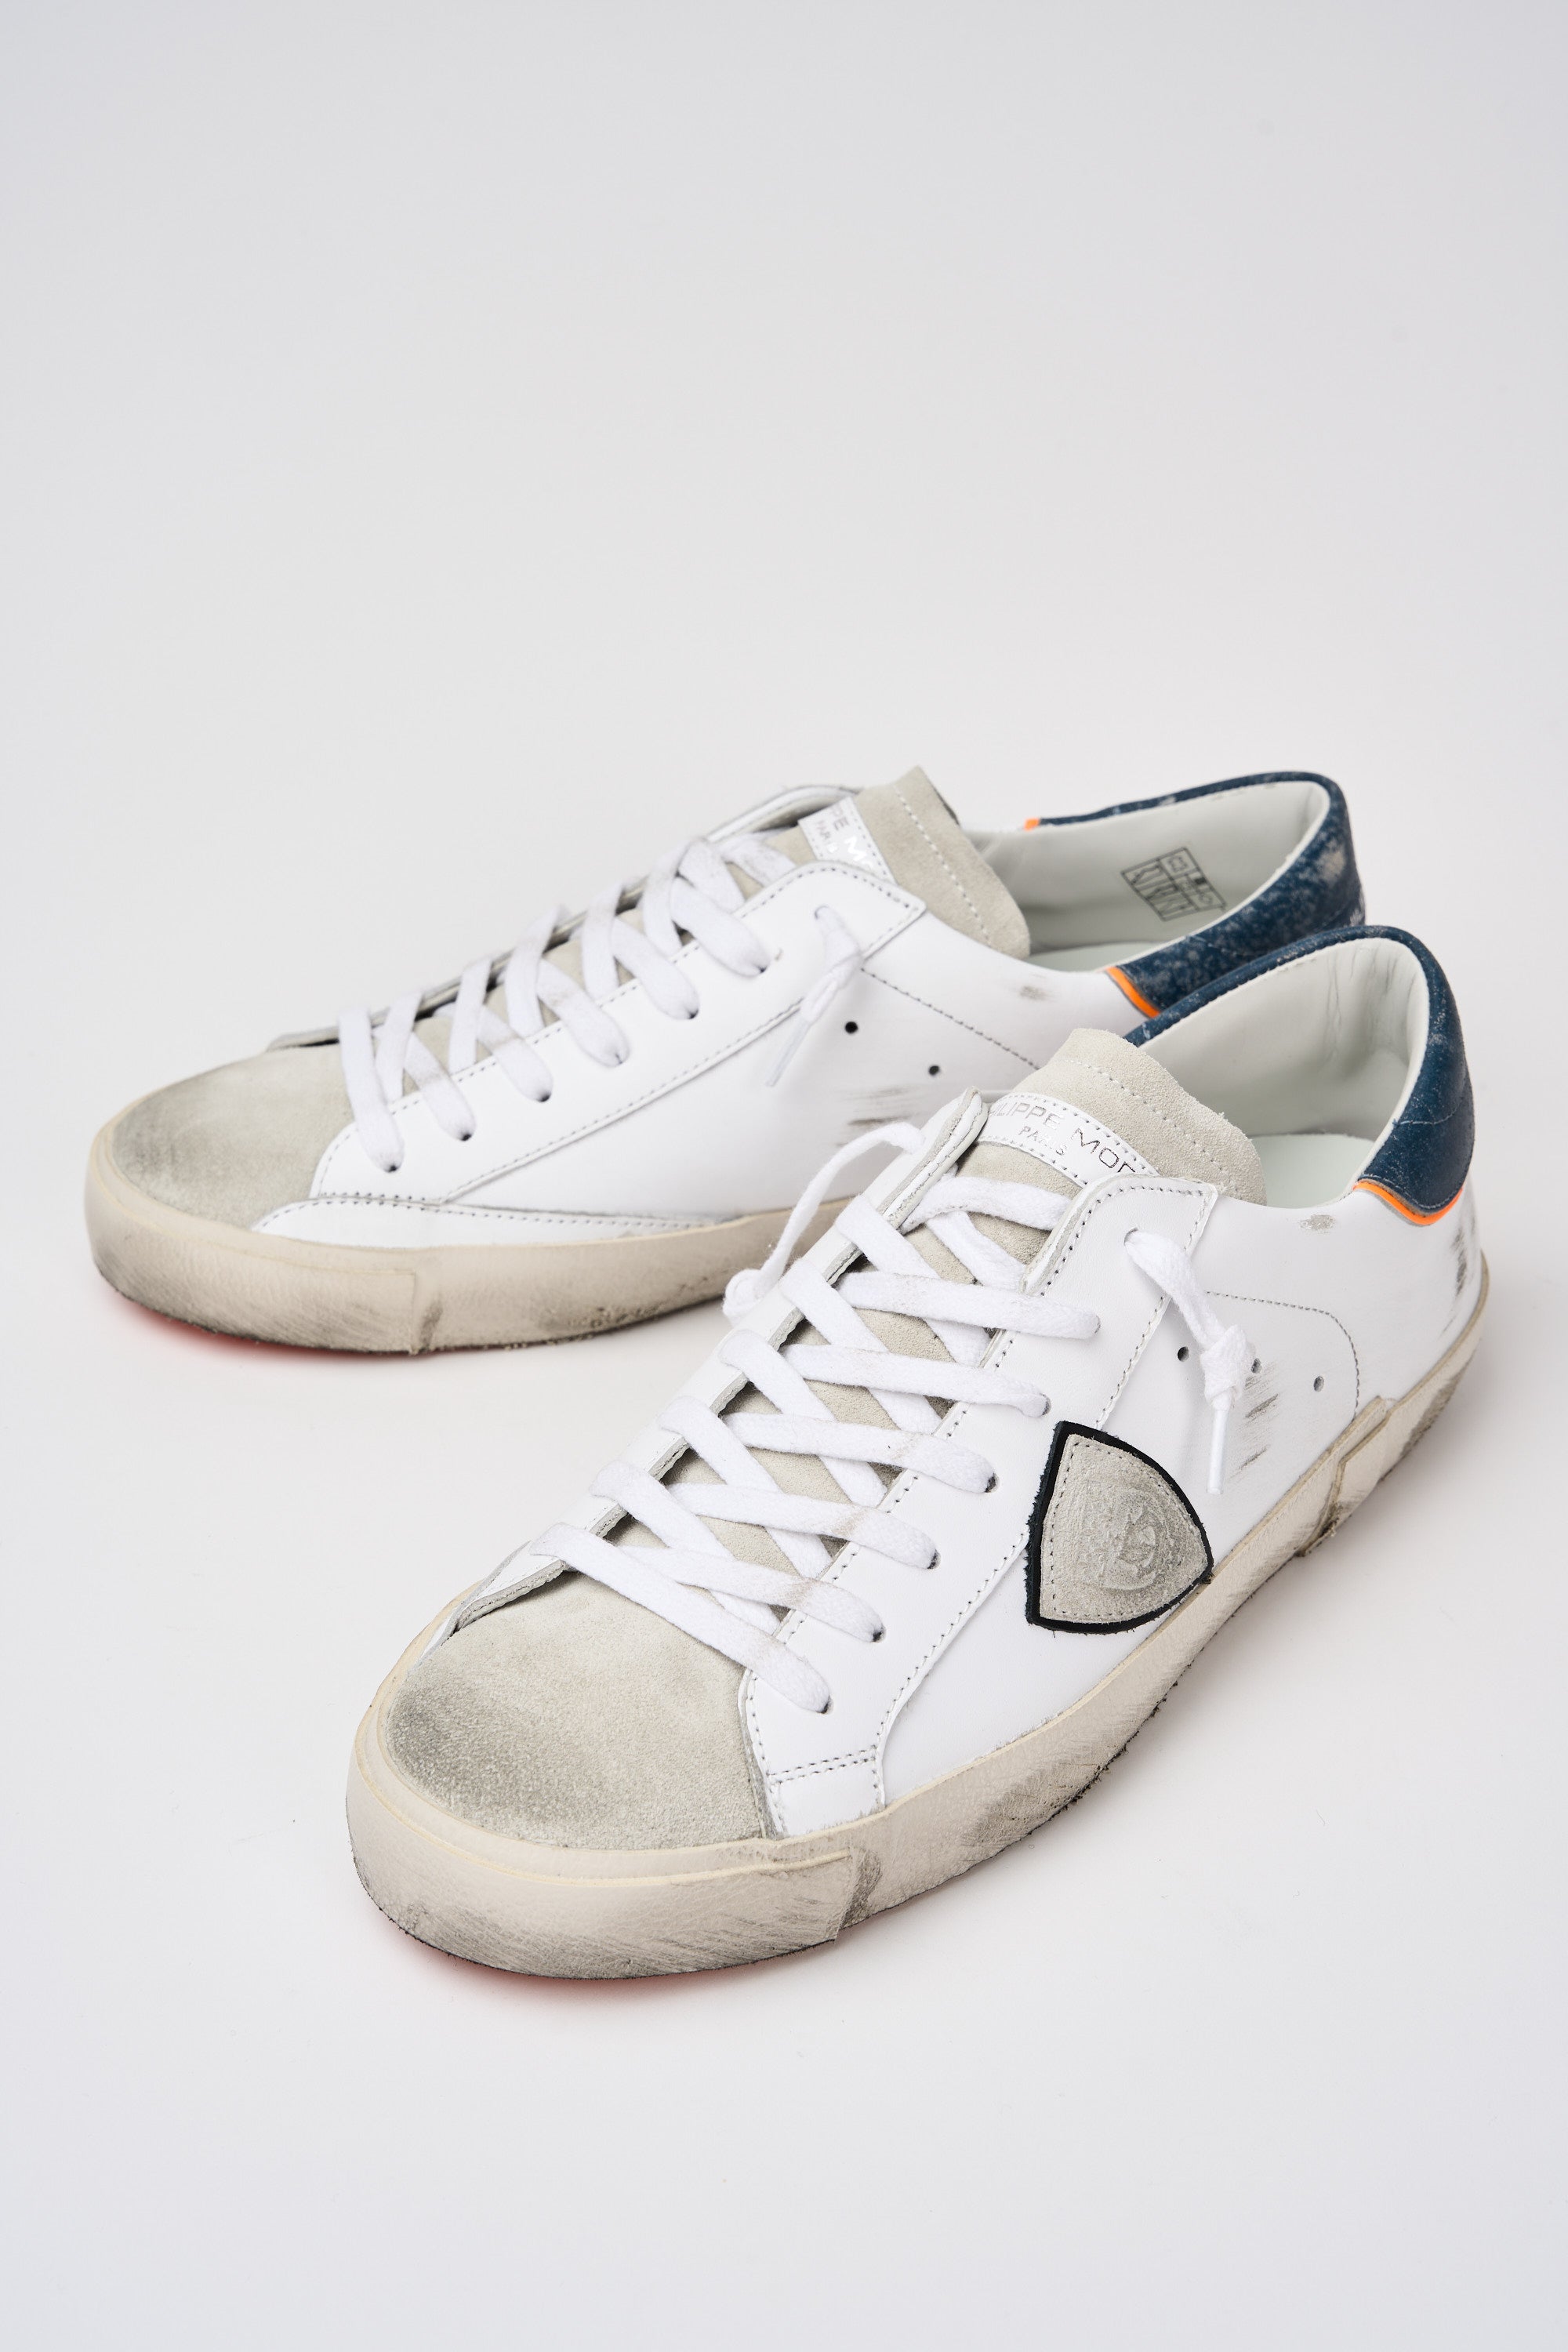 Philippe Model Sneaker Prsx Leather/Suede White/Denim-7